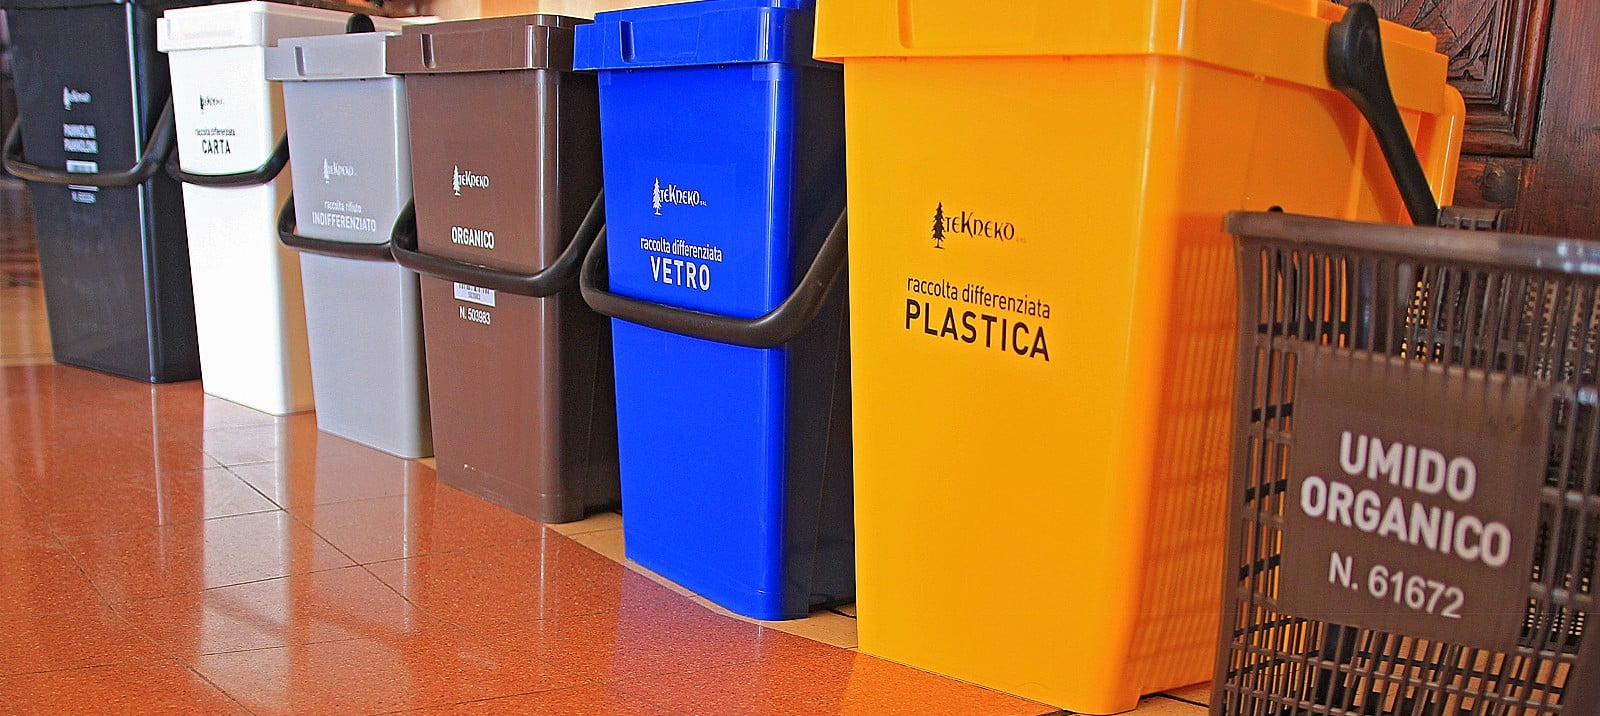 Catania, da lunedì estesa la raccolta “porta a porta” dei rifiuti in nuove zone